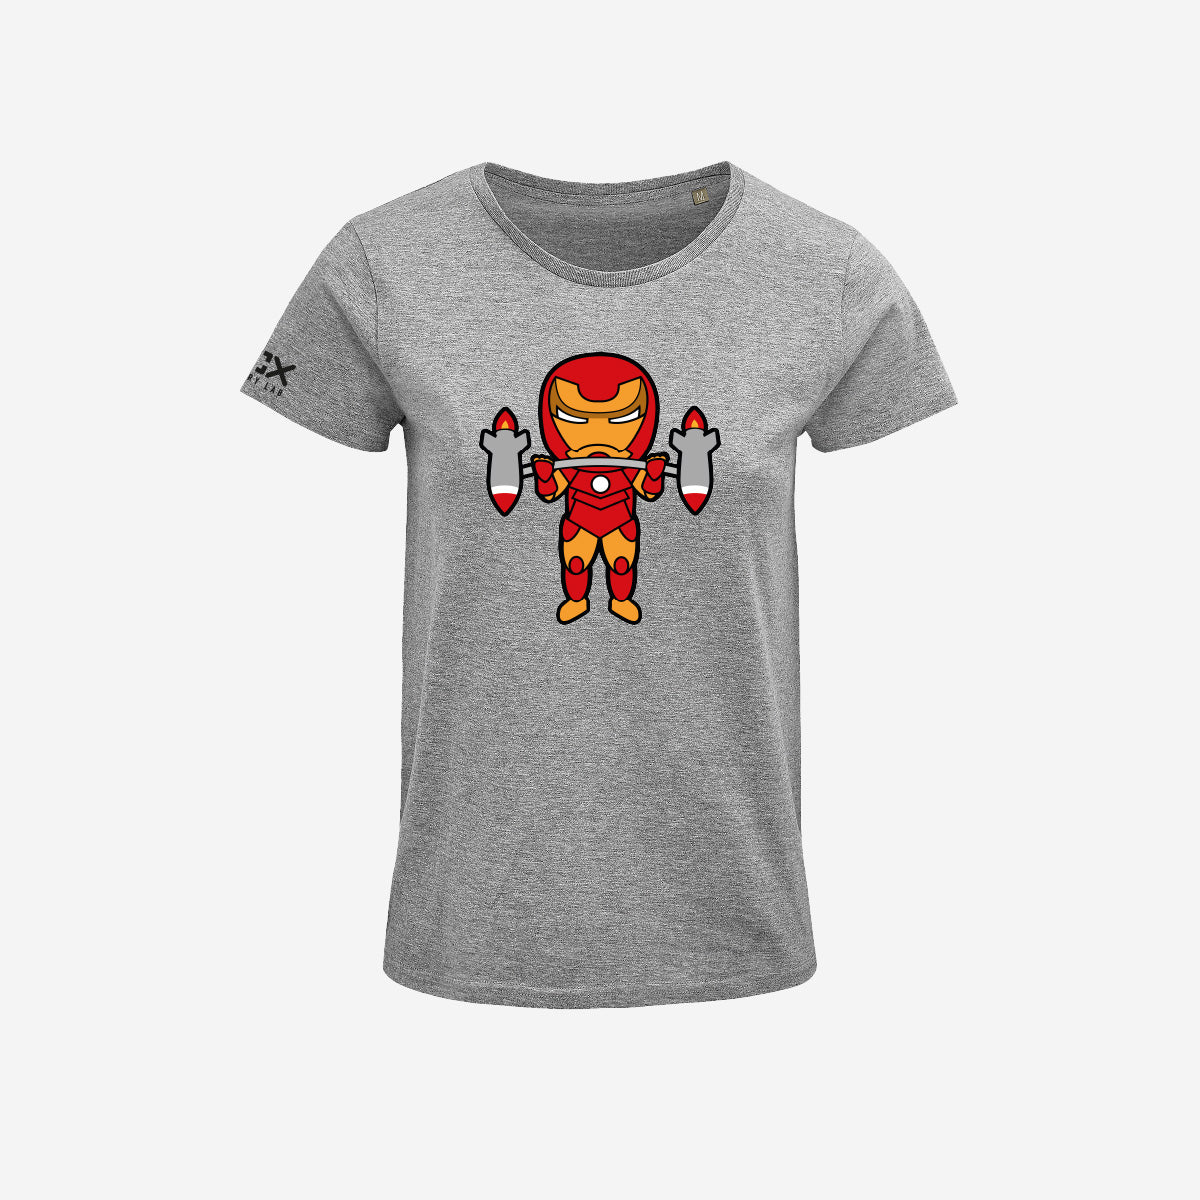 T-shirt Donna - Ironman 2